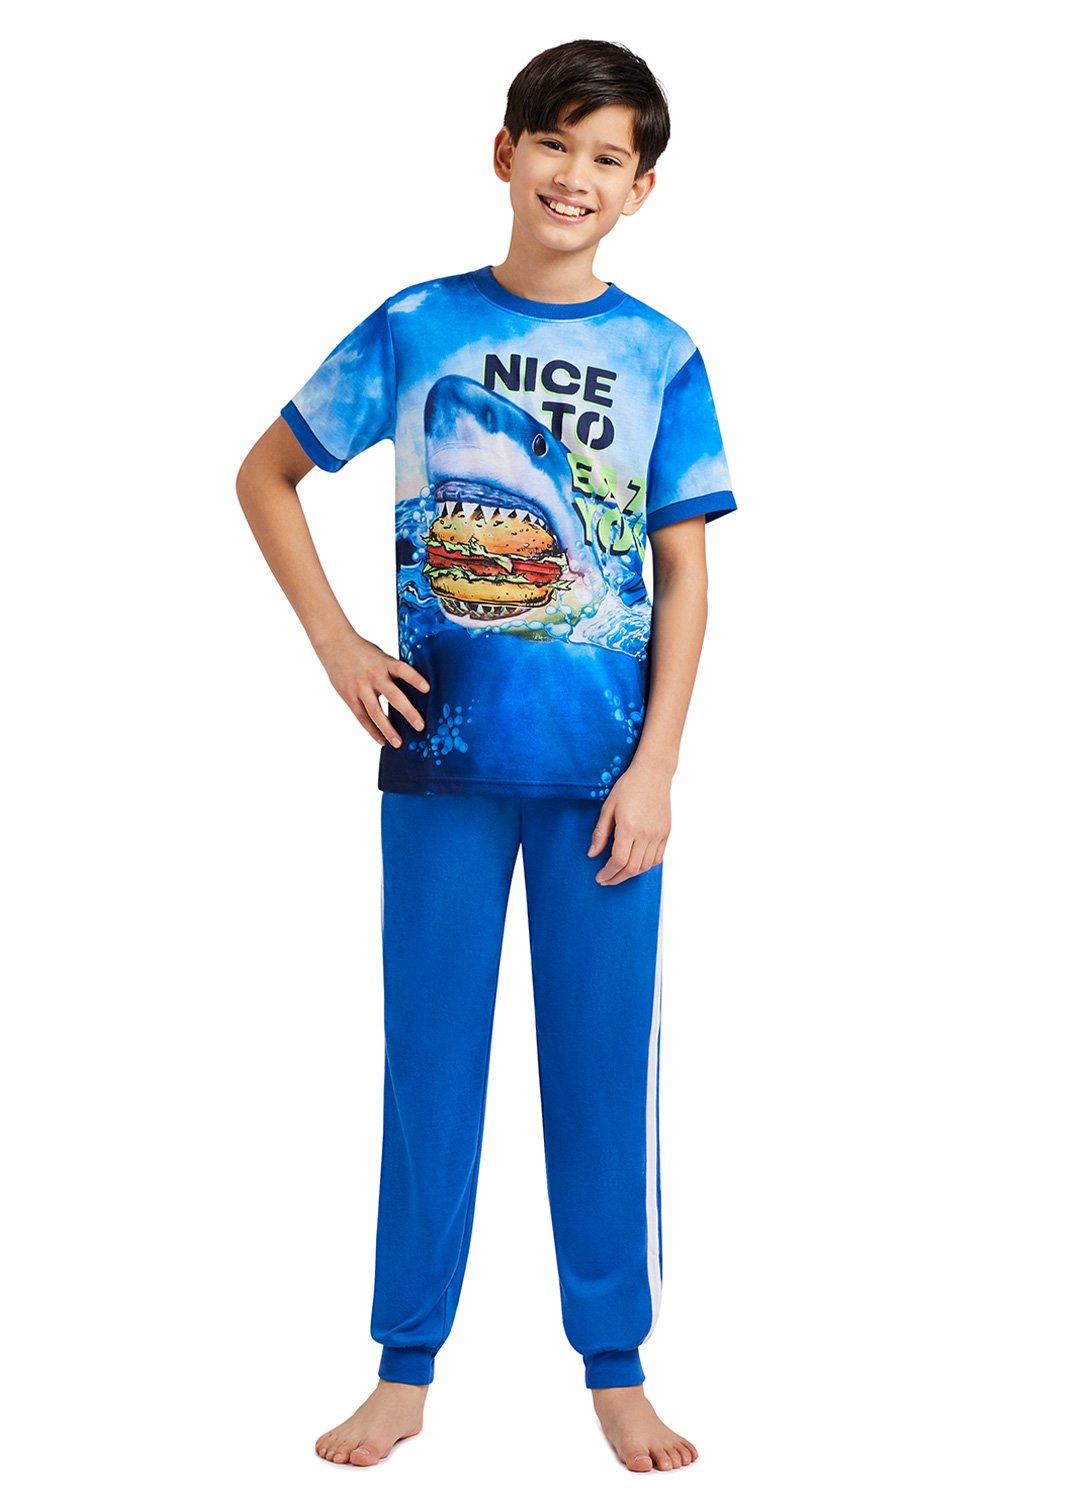 Boy with Shark eating a hamburger Print Top and Blue Jogger Pants 